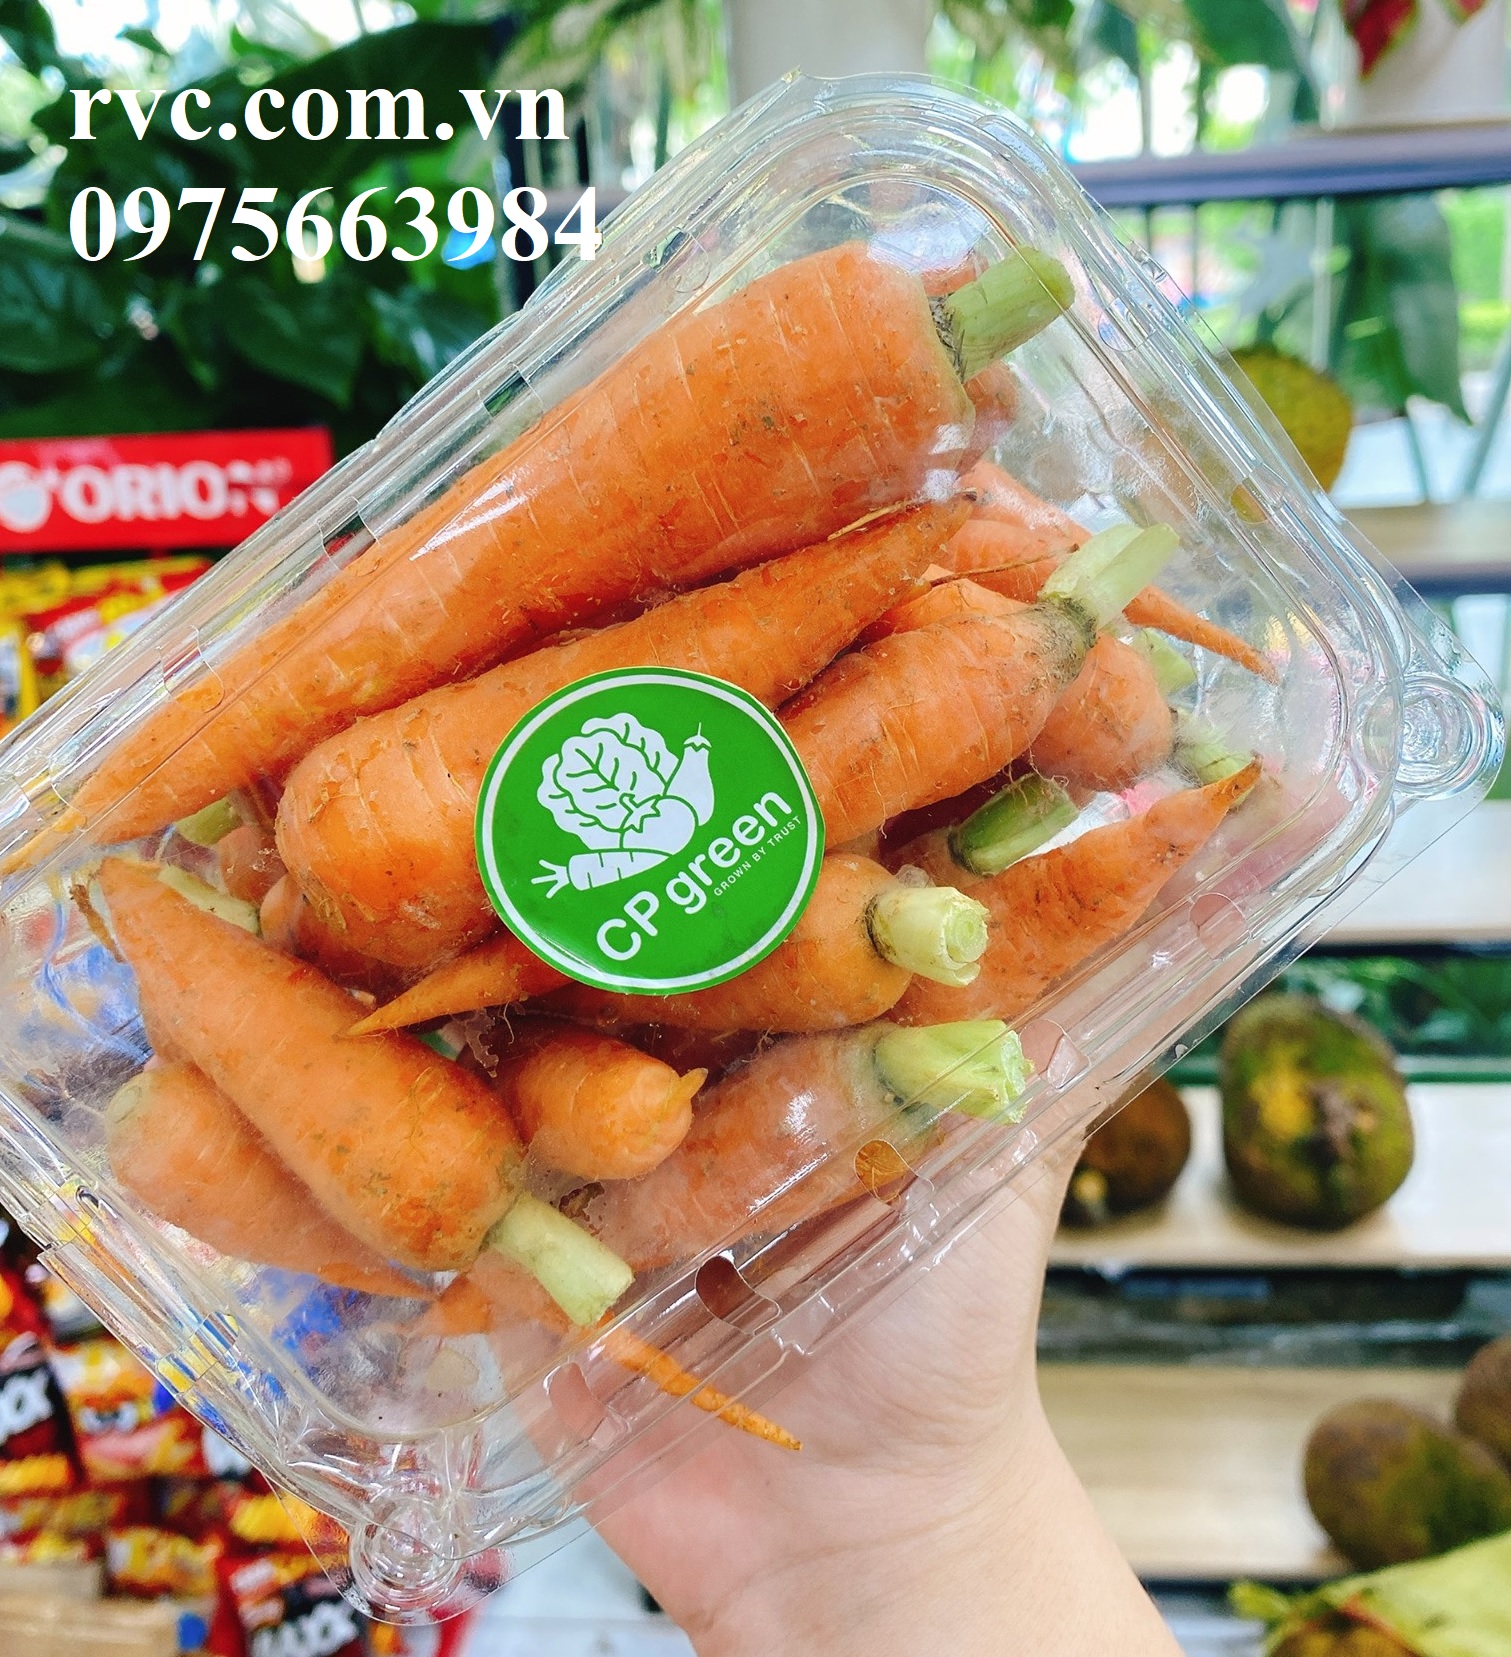 can-ban - Hộp nhựa P500B đựng 500g hoa quả sử dụng 1 lần chuyên cung cấp vào siêu thị  1800724994572759552